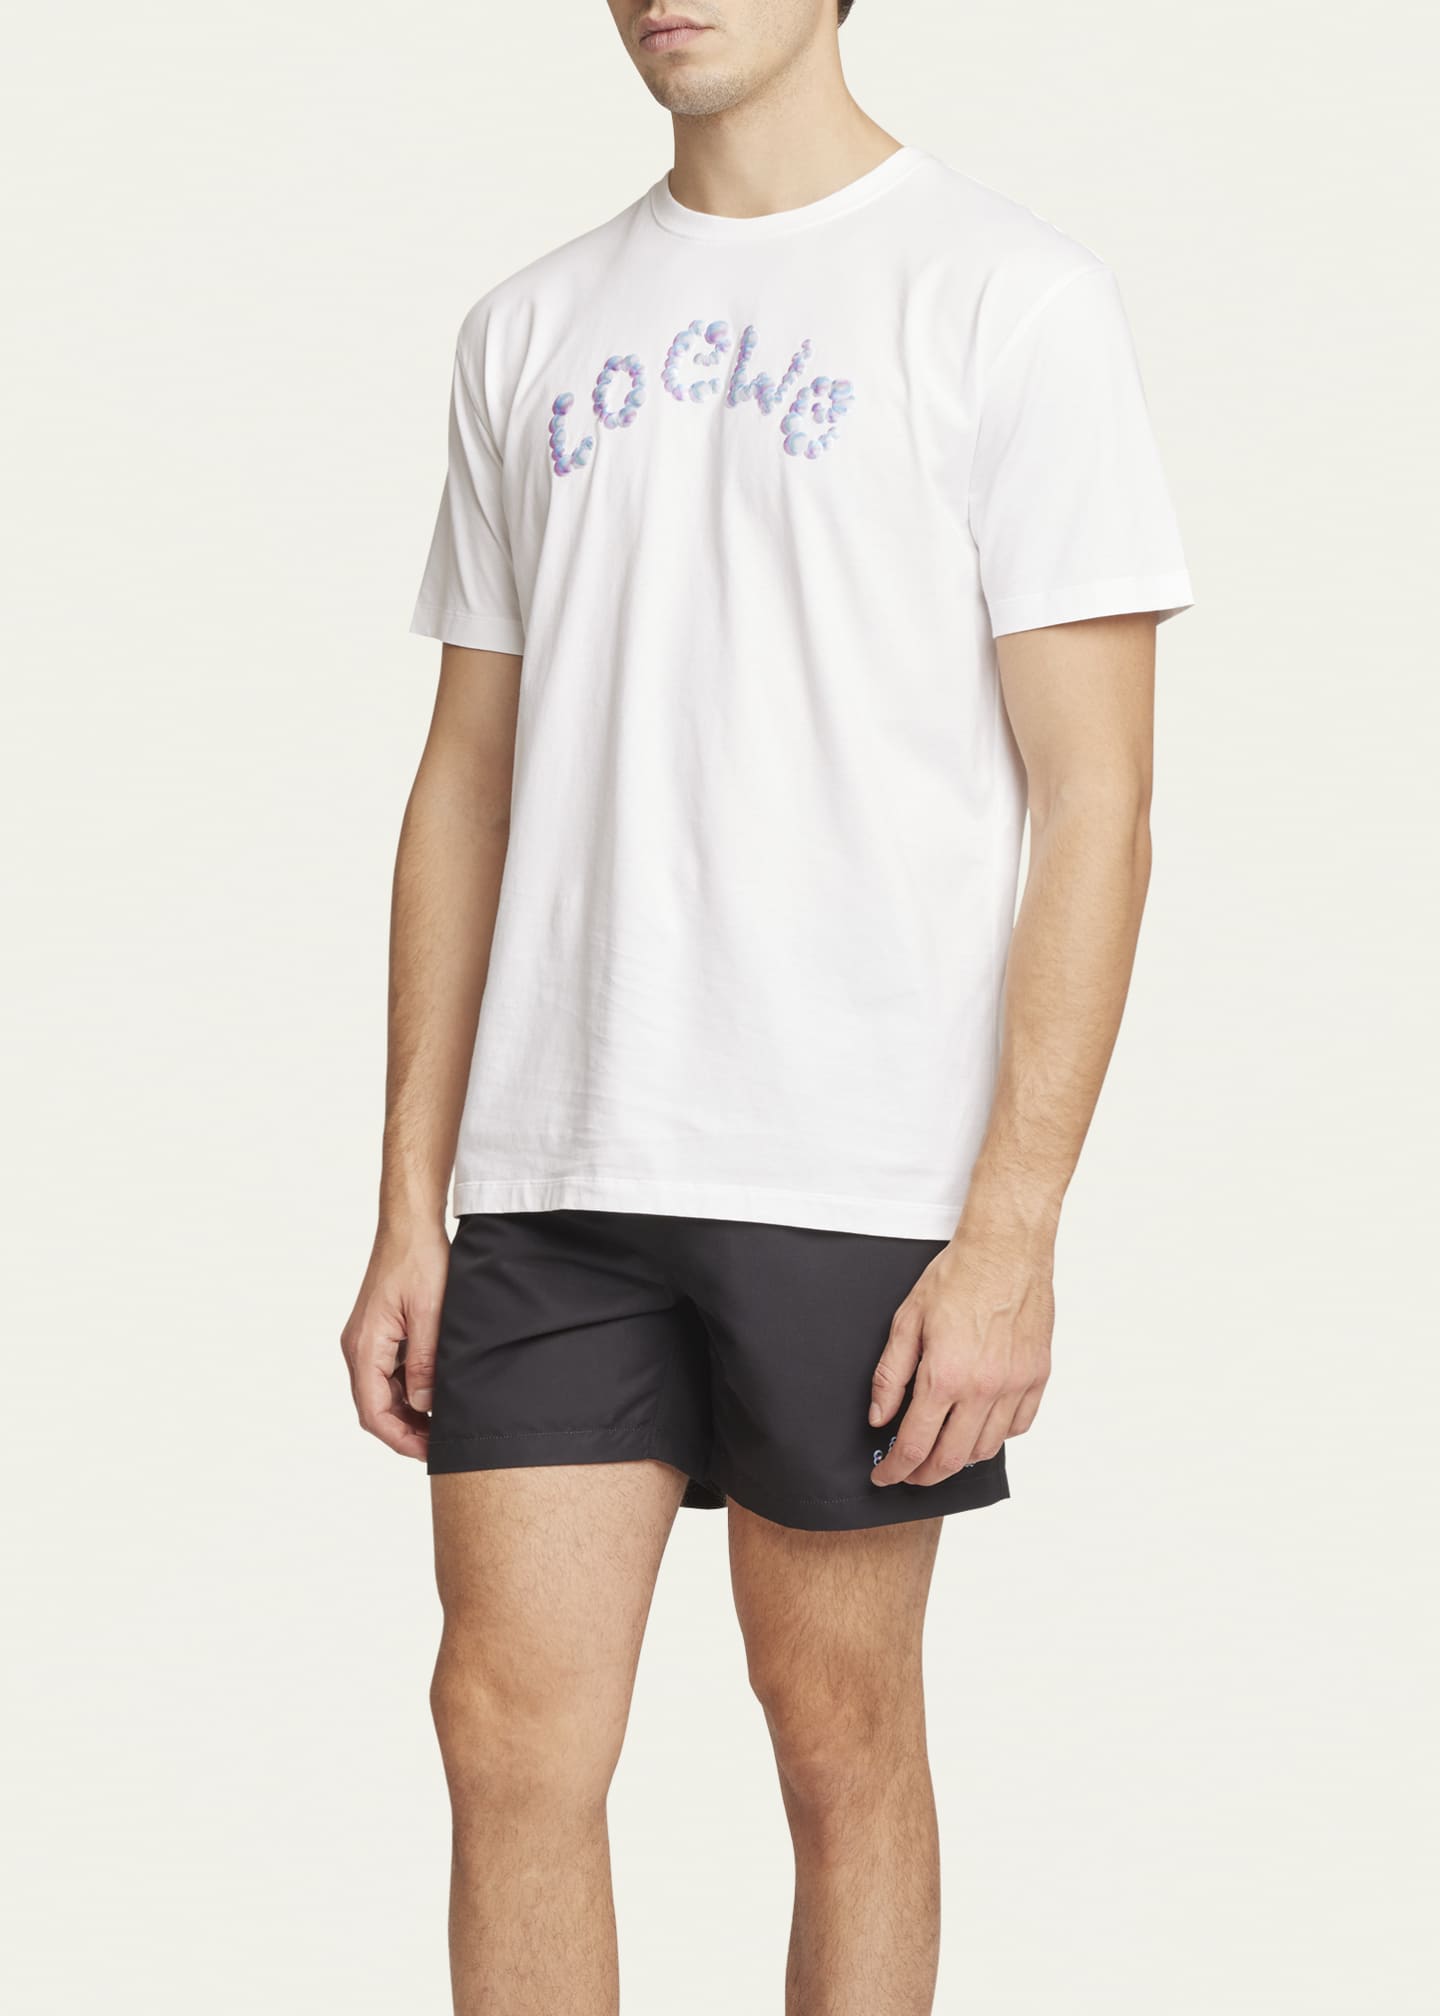 Loewe x Paula's Ibiza Men's Bubble Logo T-Shirt - Bergdorf Goodman